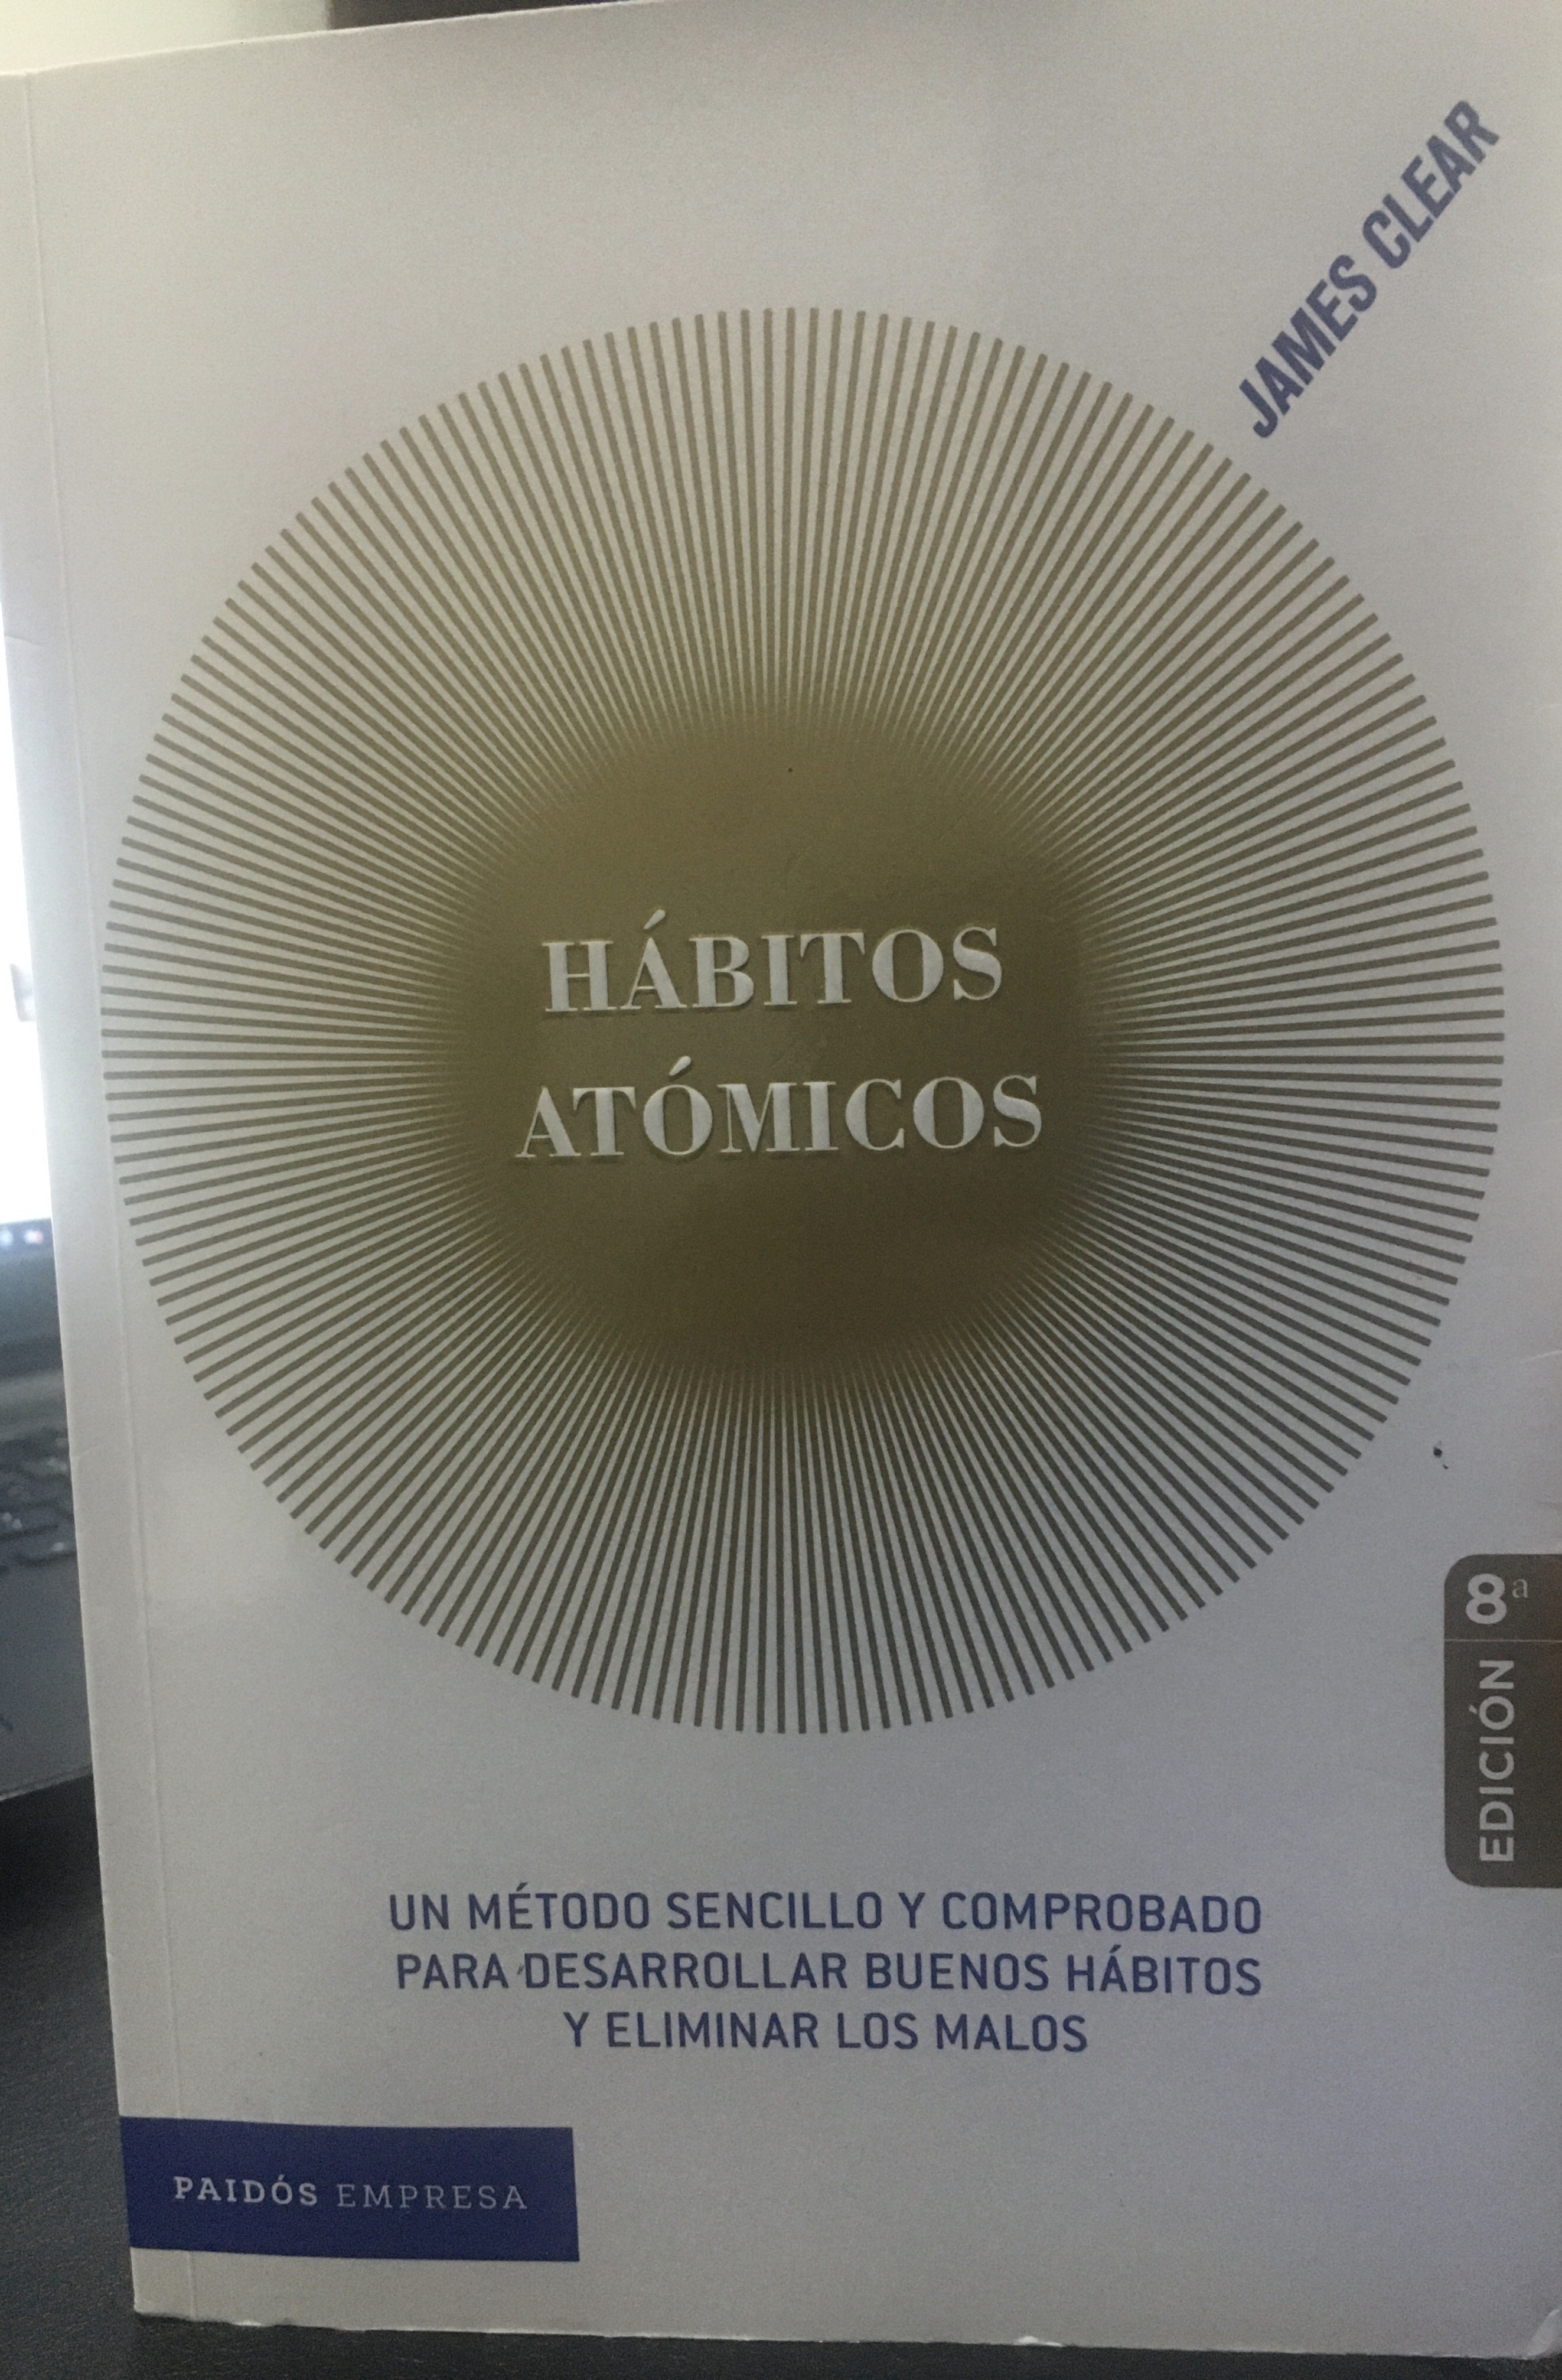 Hábitos atómicos» de James Clear.